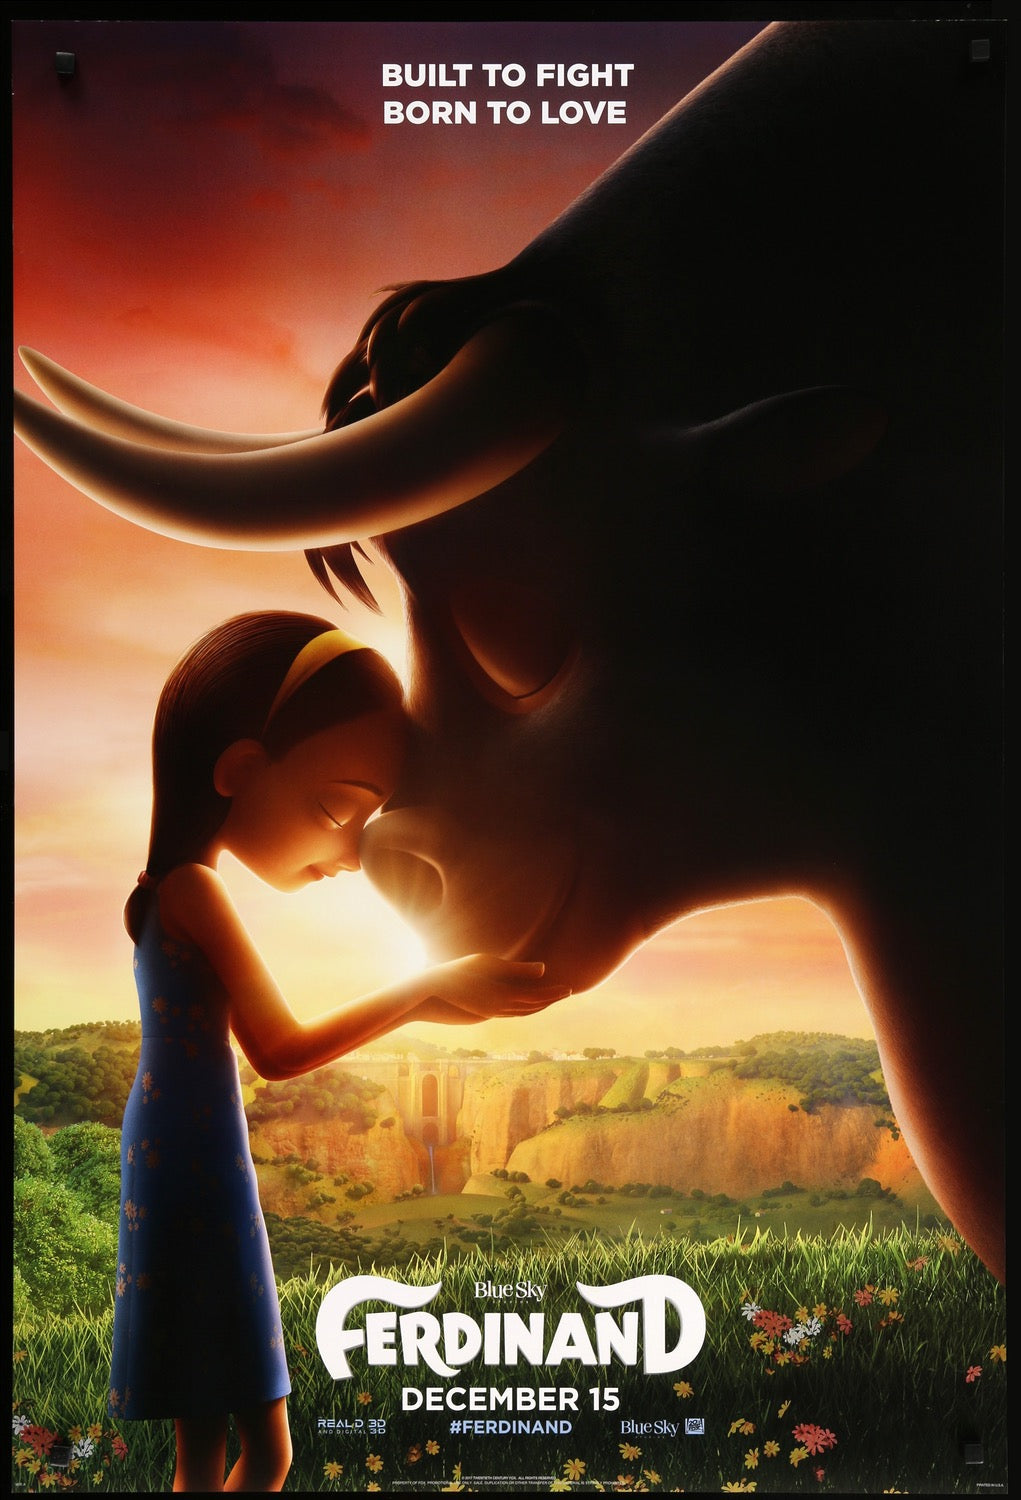 Ferdinand (2017) original movie poster for sale at Original Film Art